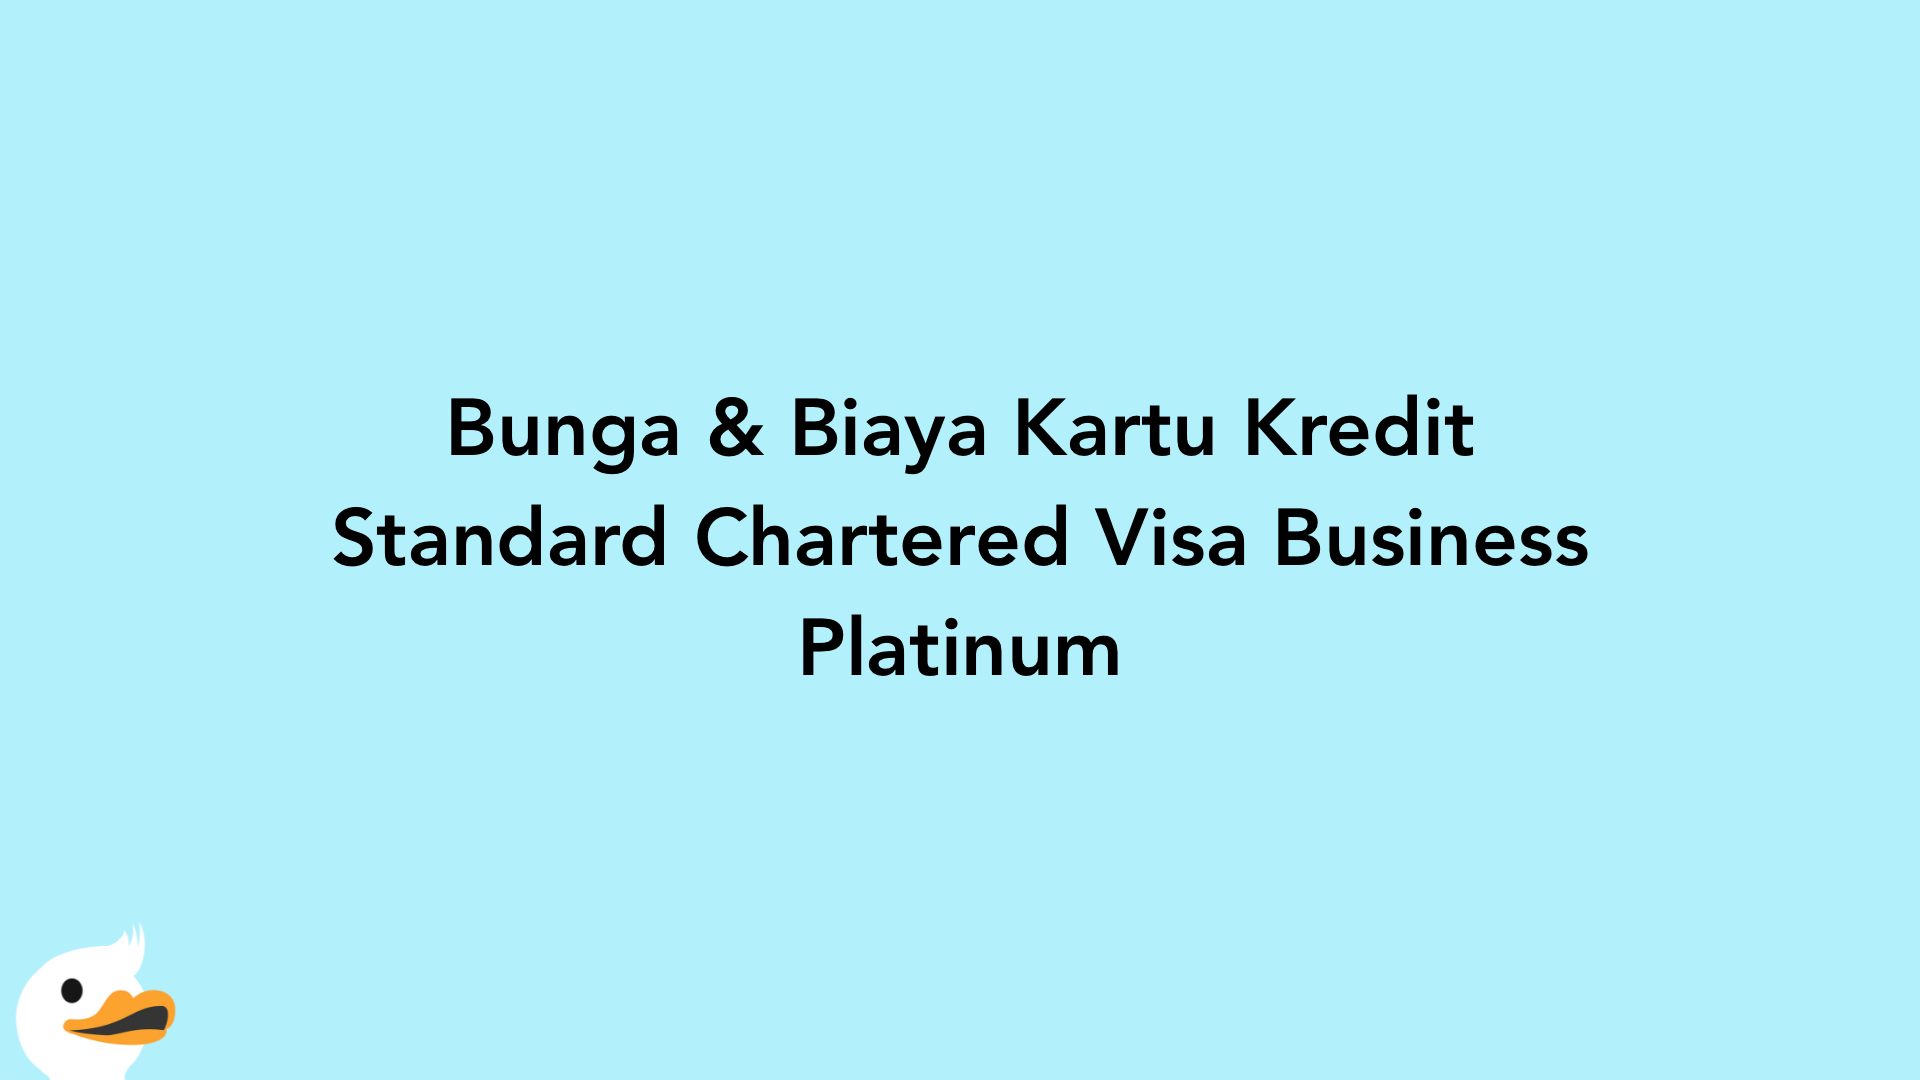 Bunga & Biaya Kartu Kredit Standard Chartered Visa Business Platinum